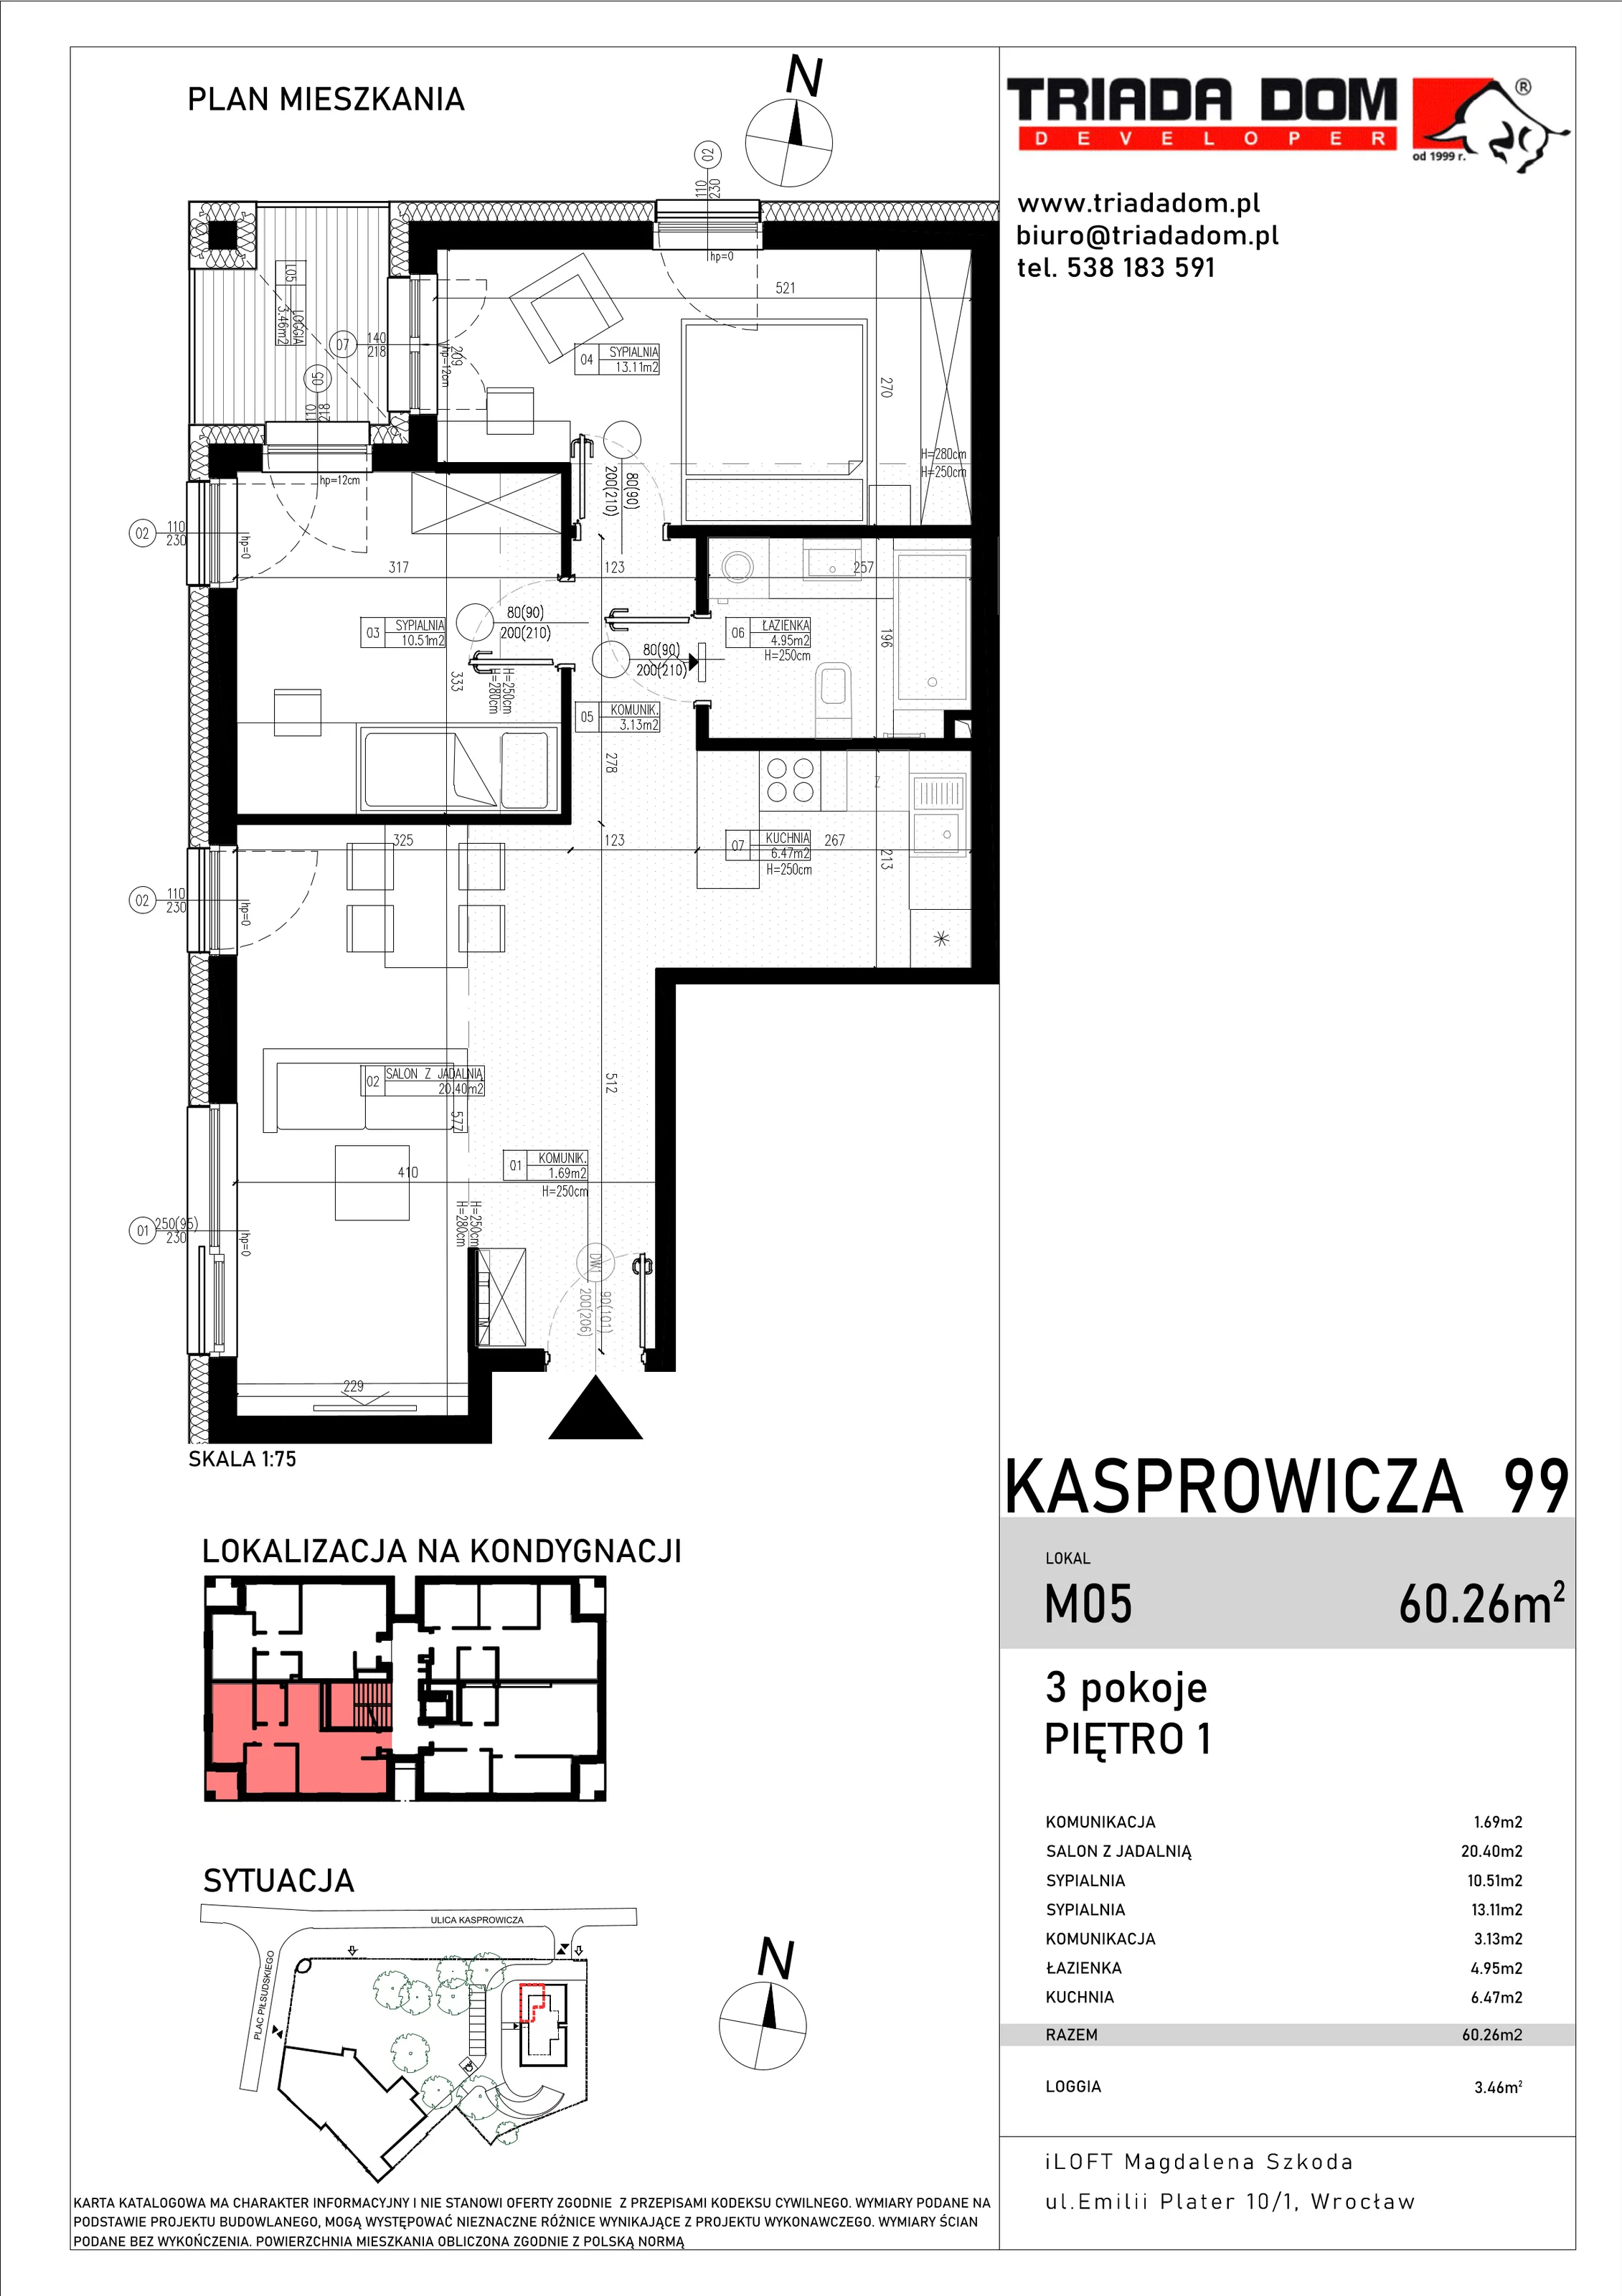 Apartament 60,26 m², piętro 1, oferta nr M05, Apartamenty Kasprowicza Premium, Wrocław, Psie Pole-Zawidawie, Karłowice, al. Jana Kasprowicza 99